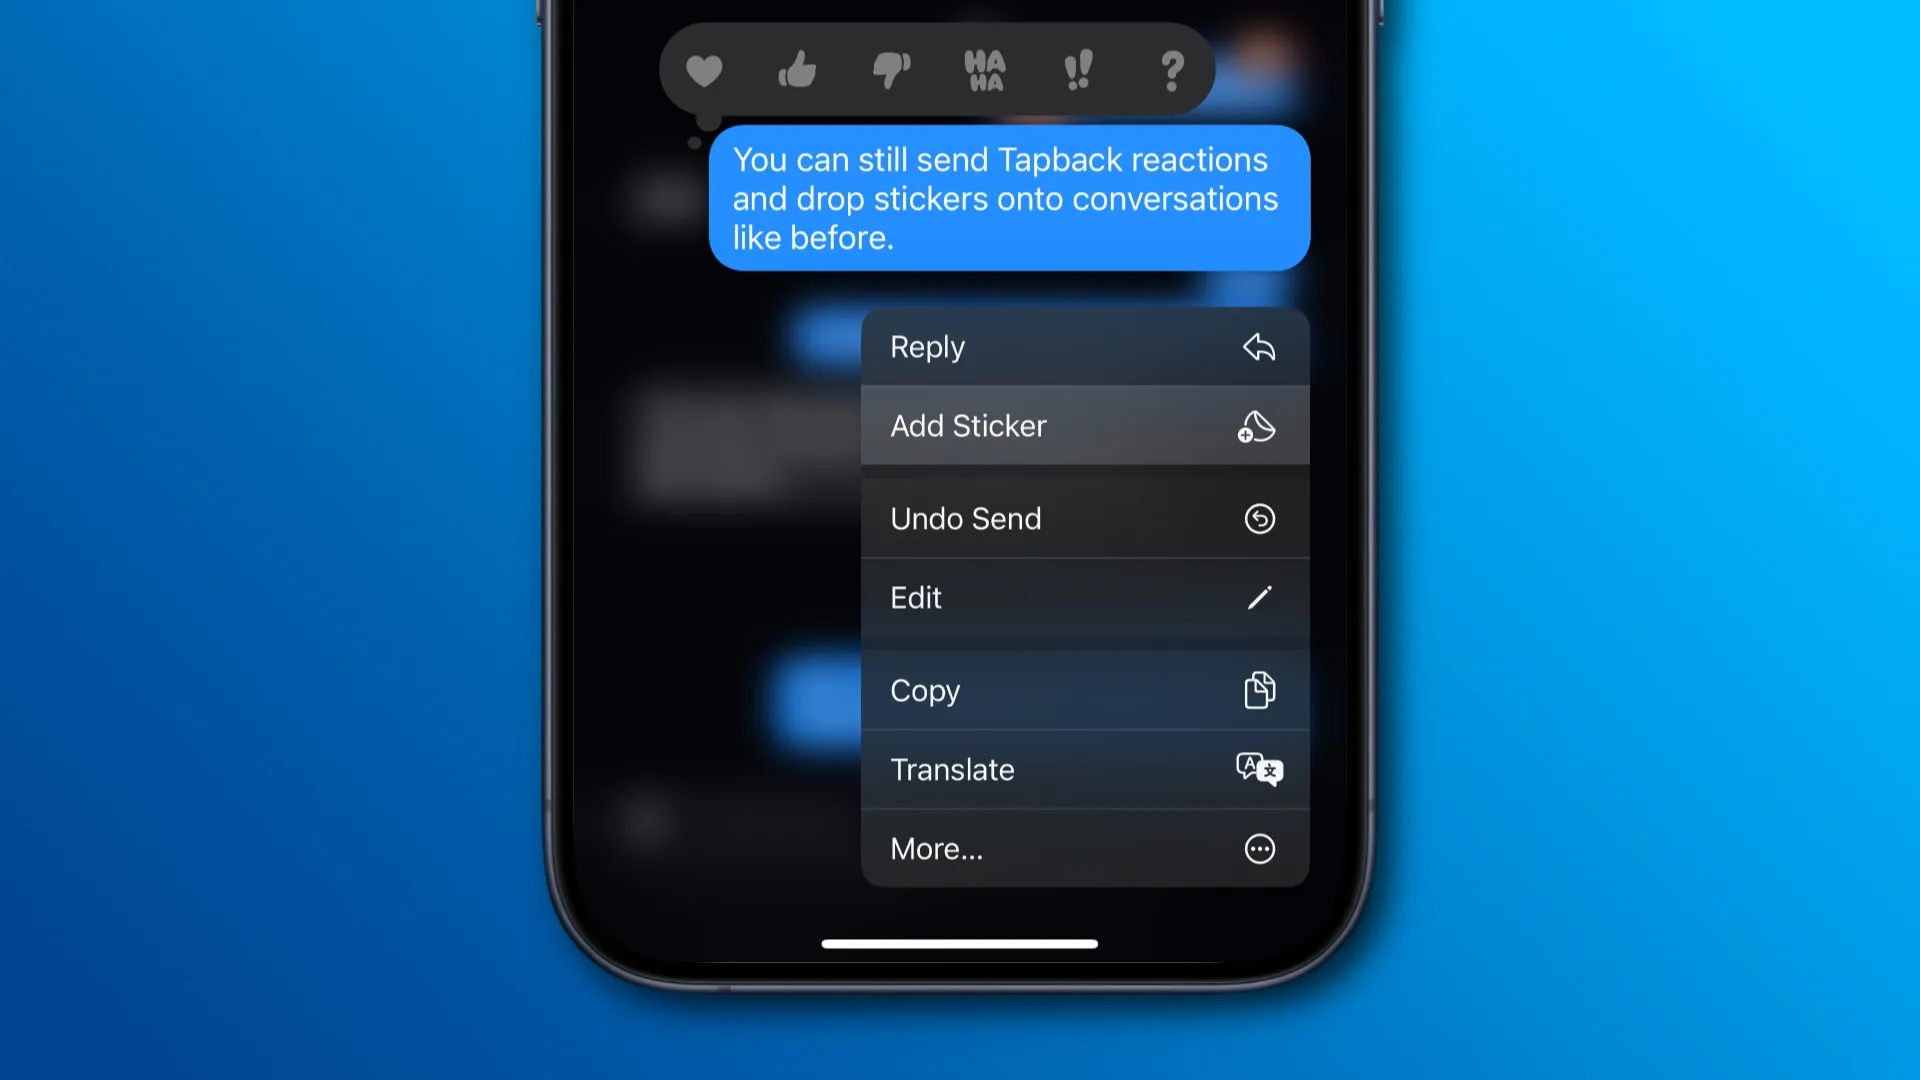 스티커 추가 옵션이 강조 표시된 채팅 풍선 위에 메뉴를 표시하는 iPhone의 메시지 앱